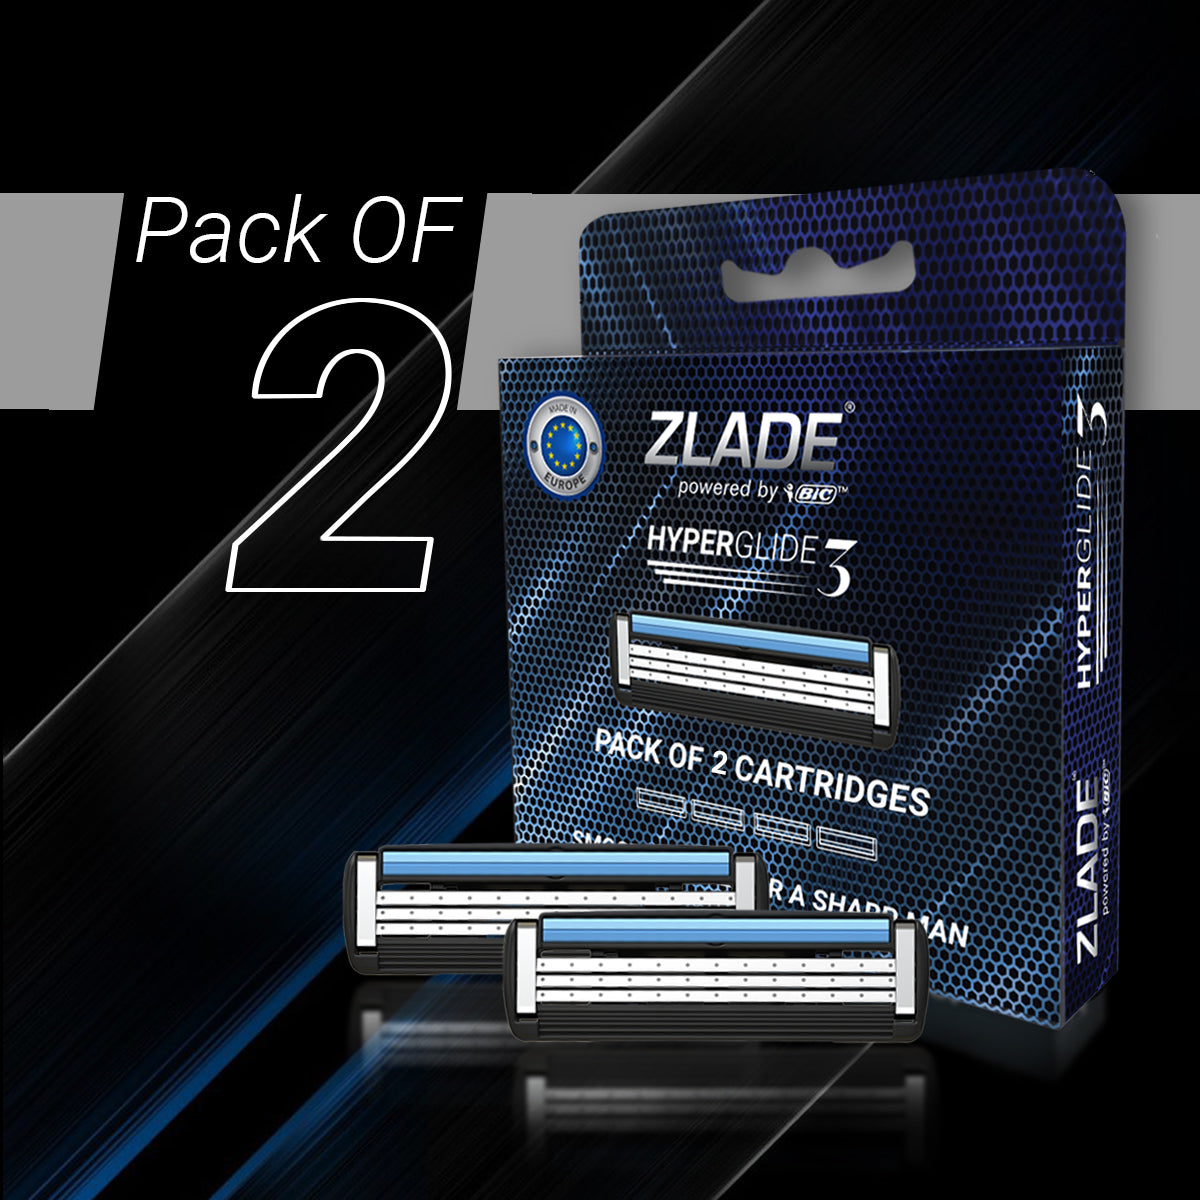 Zlade HyperGlide3 Advanced Shaving Razor Cartridges for Men